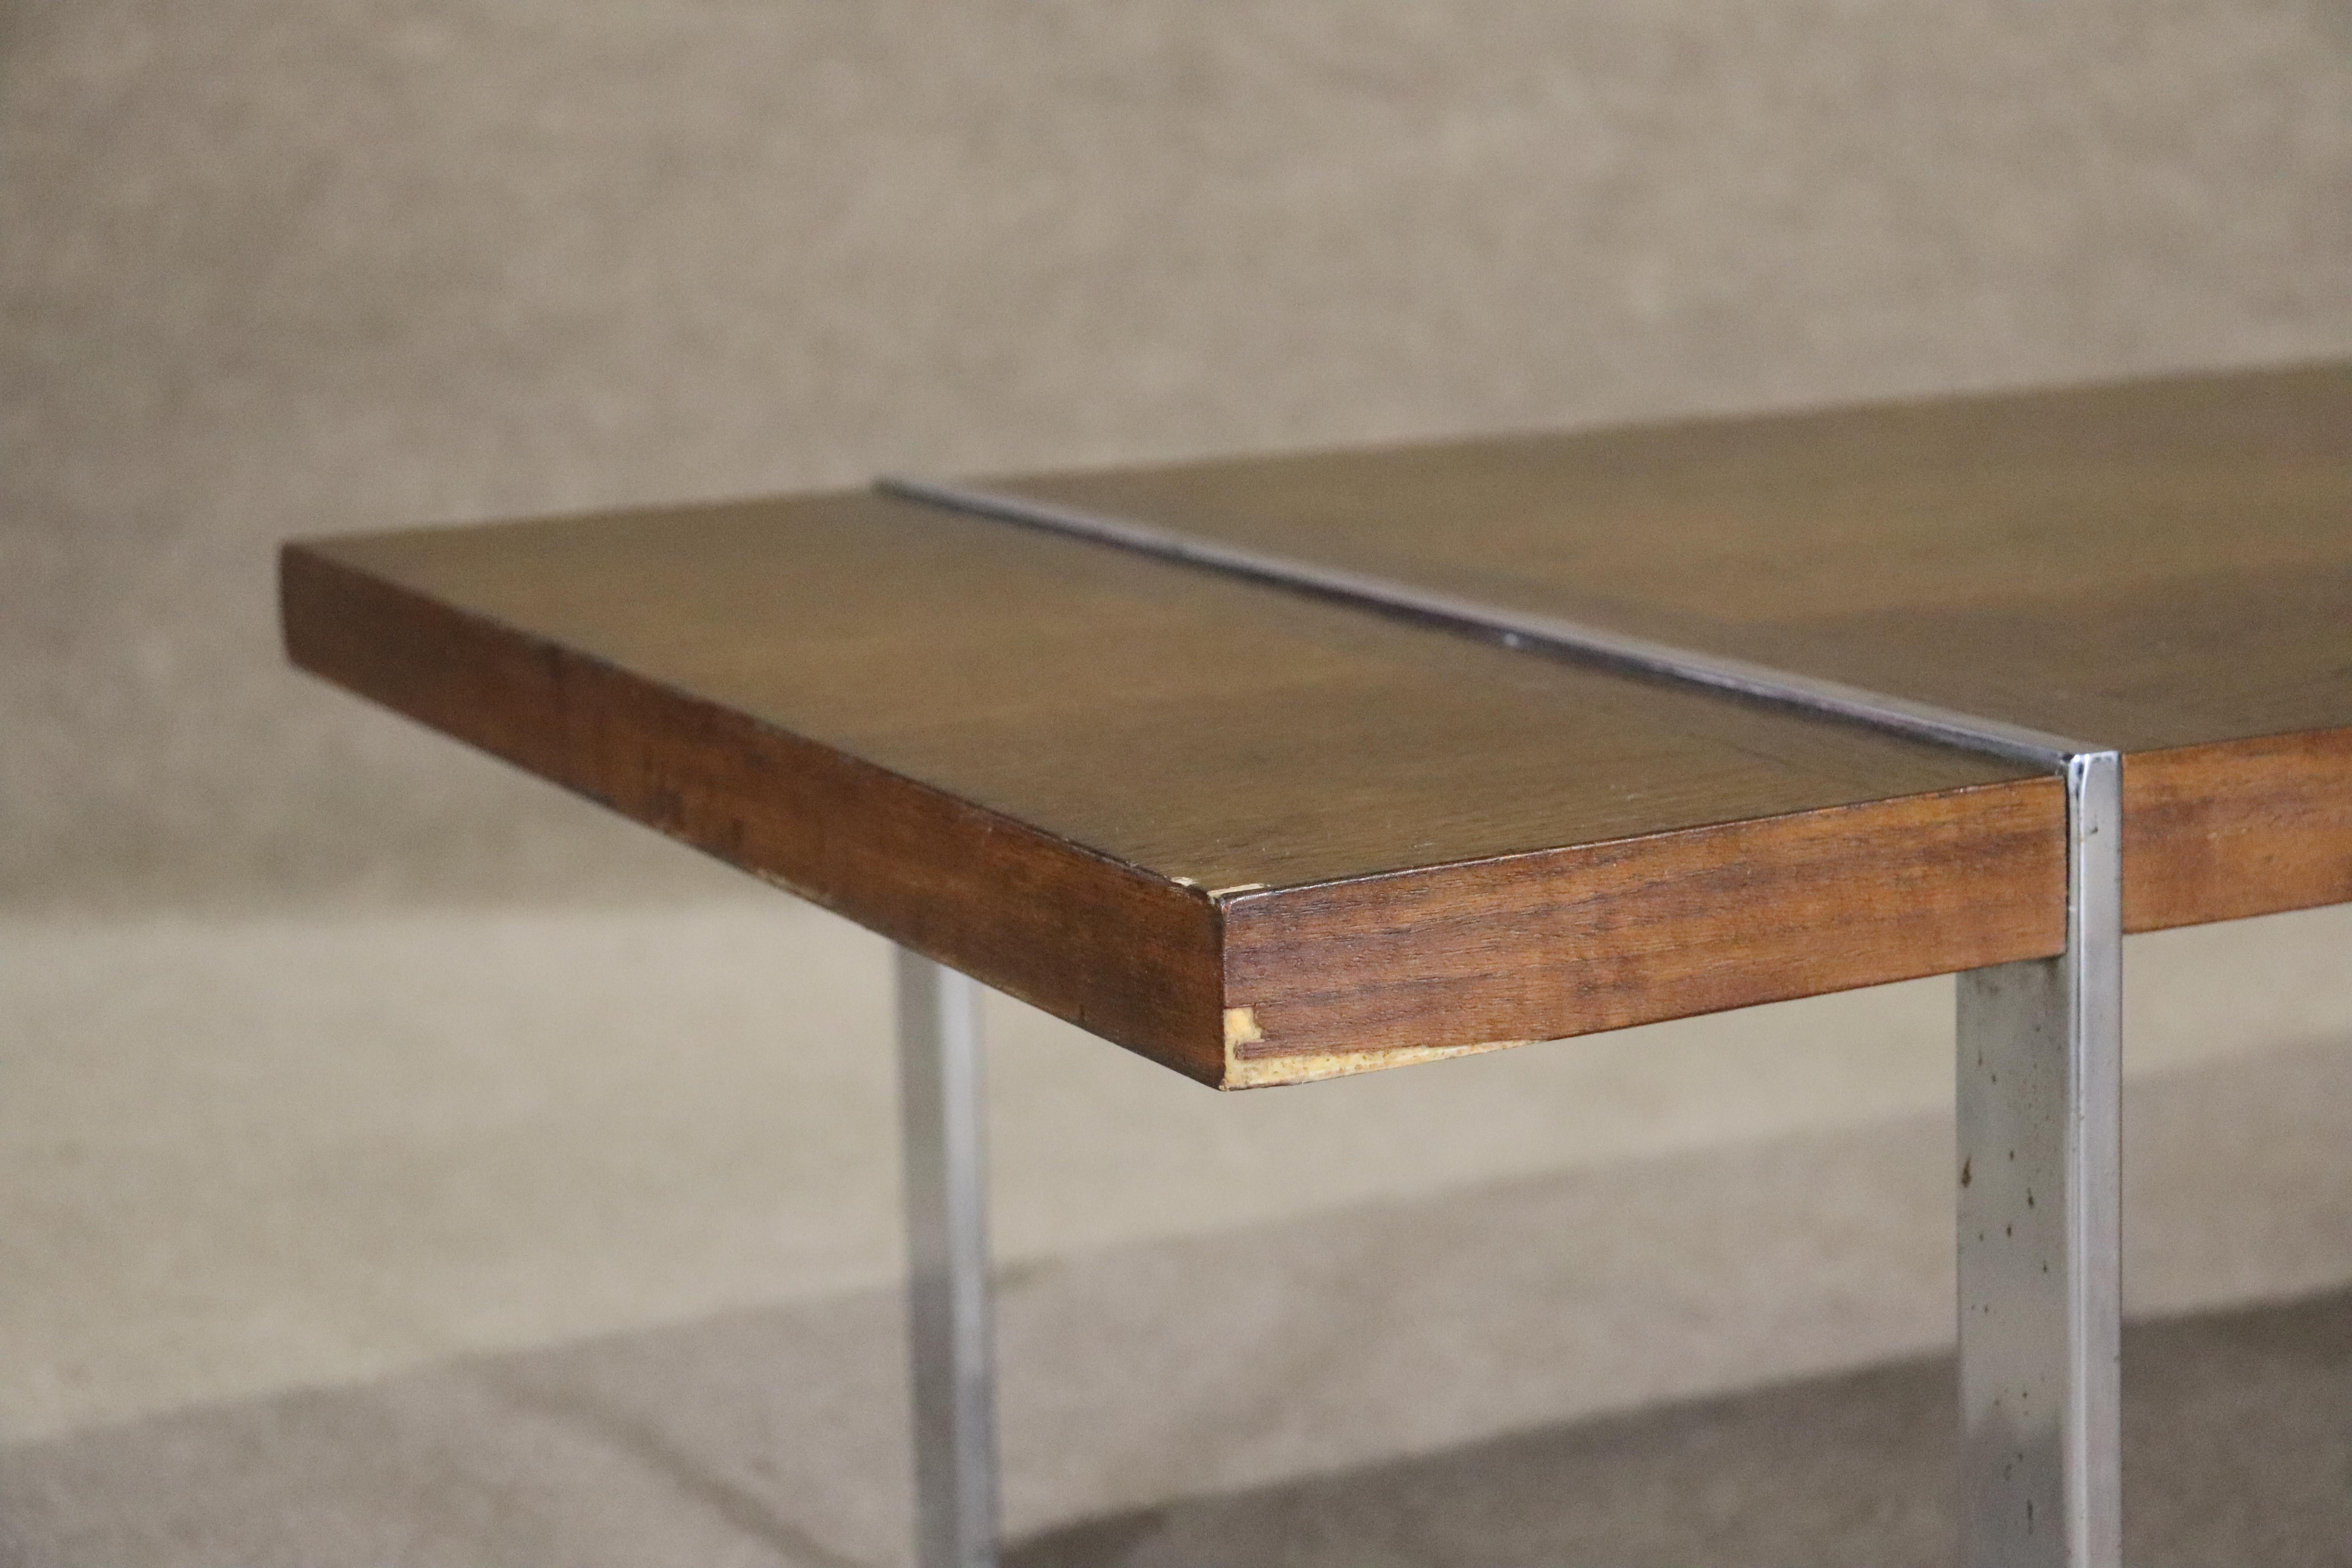 Dieser schlichte und hübsche Tisch aus der Mitte des Jahrhunderts von Lane Furniture hat eine warme Walnussmaserung mit kontrastierenden Palisanderstreifen und polierten Chrombeinen, die in der Tischplatte sichtbar sind.
Bitte bestätigen Sie den